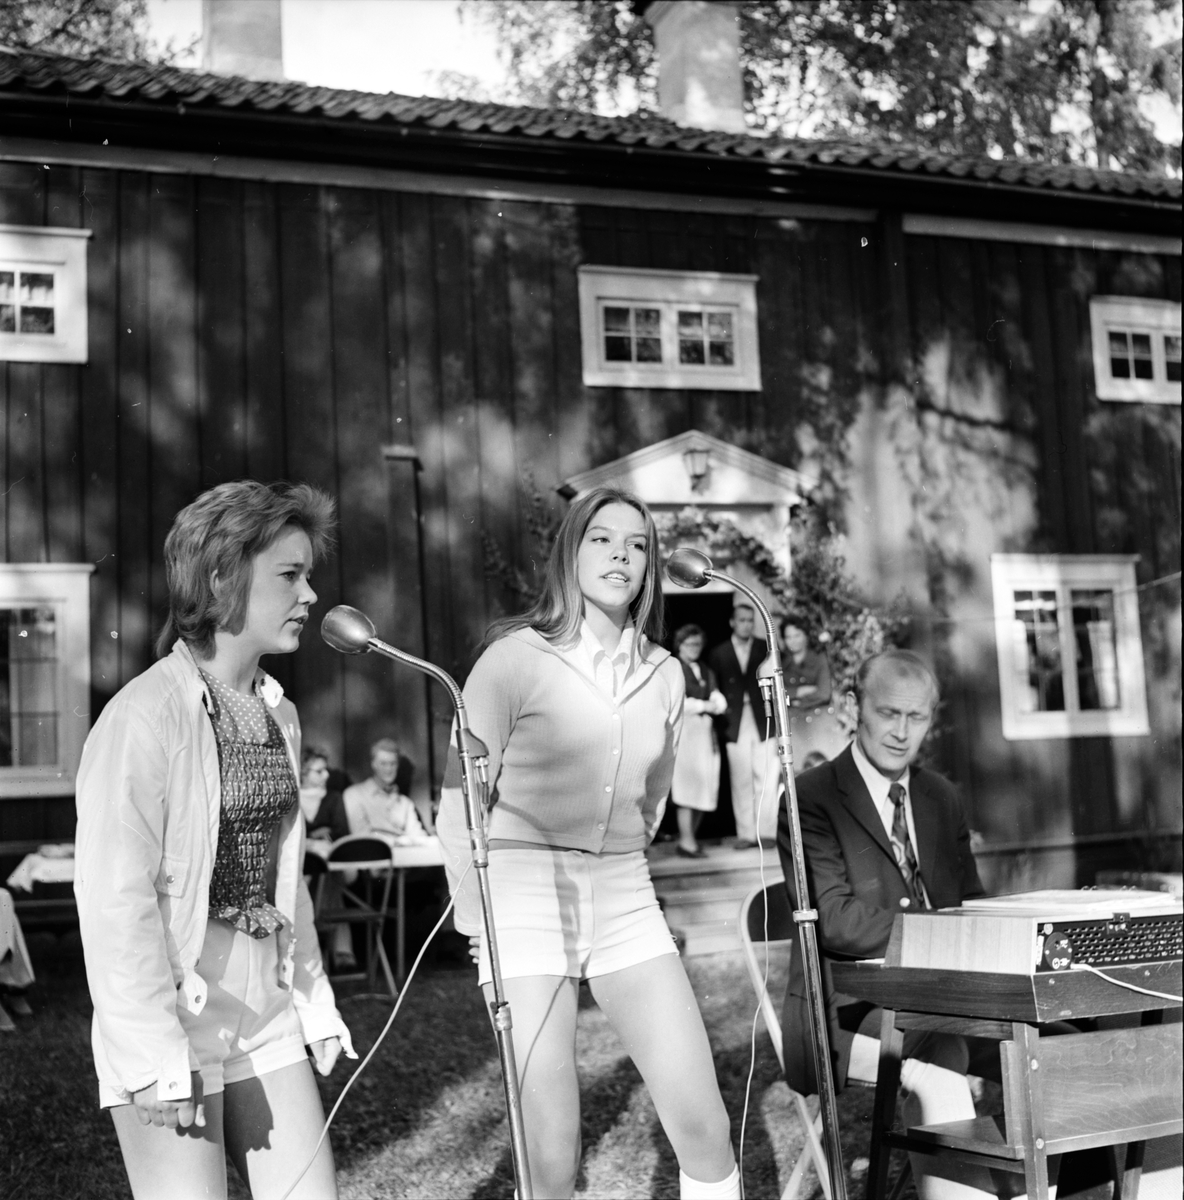 Arbrå,
Fornhemmet,
Midsommar,
1971